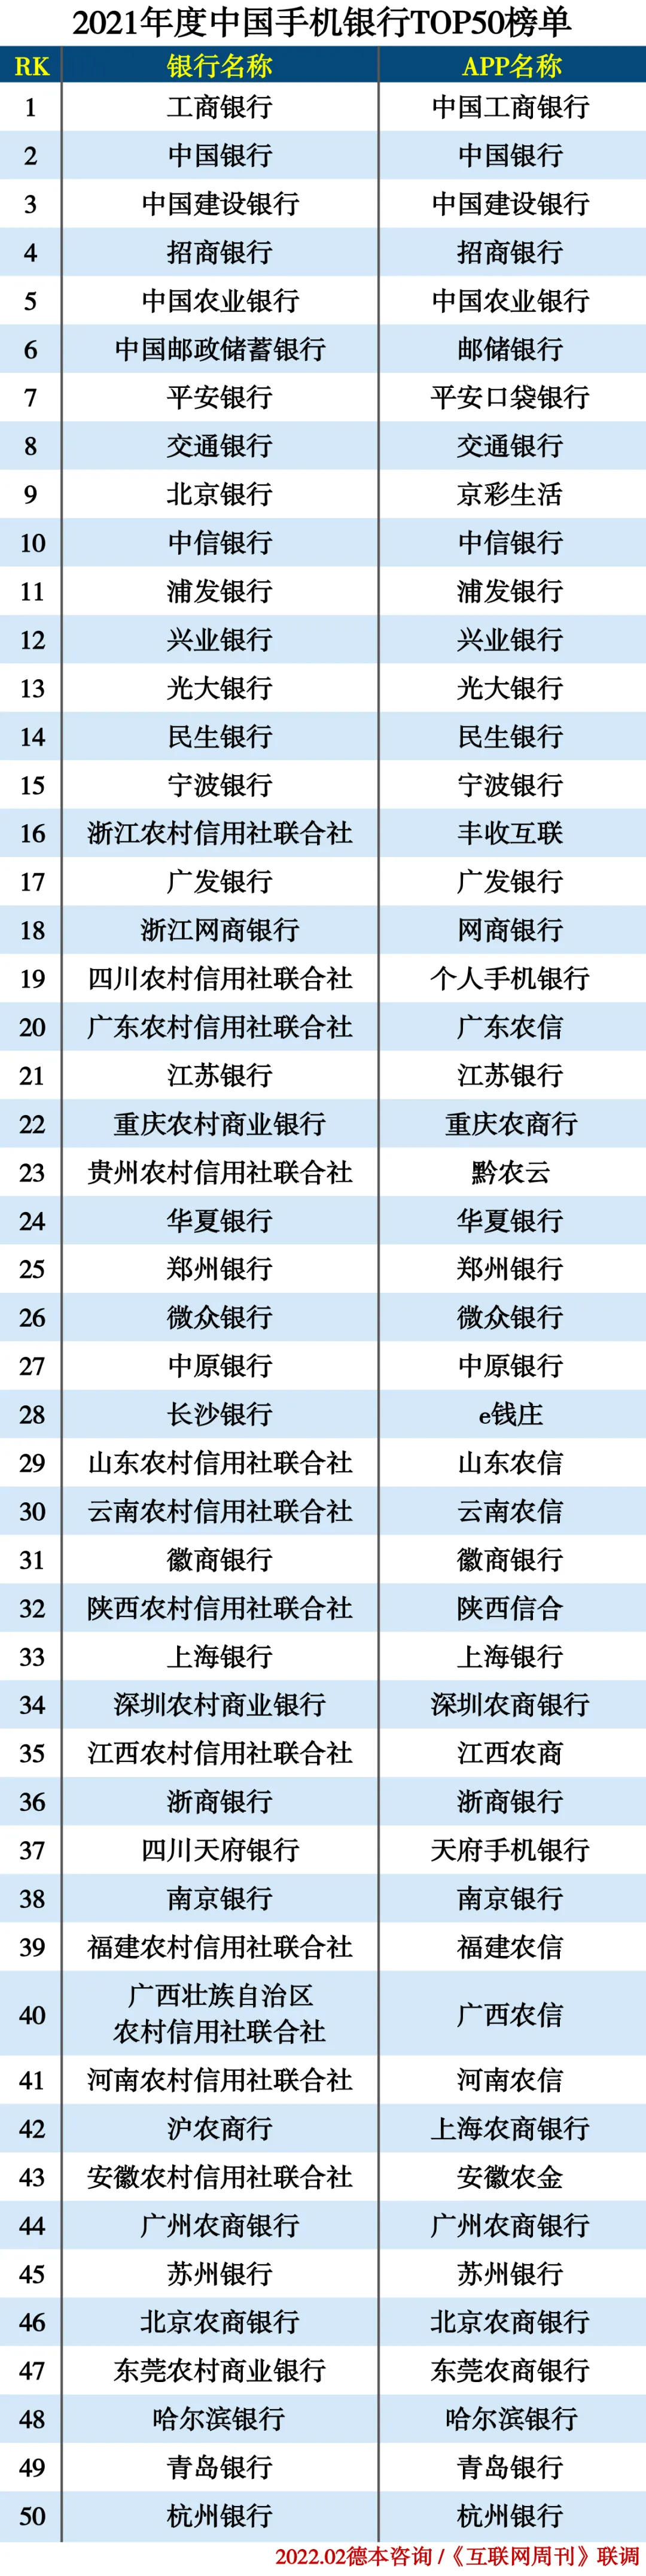 2021中国手机银行TOP50